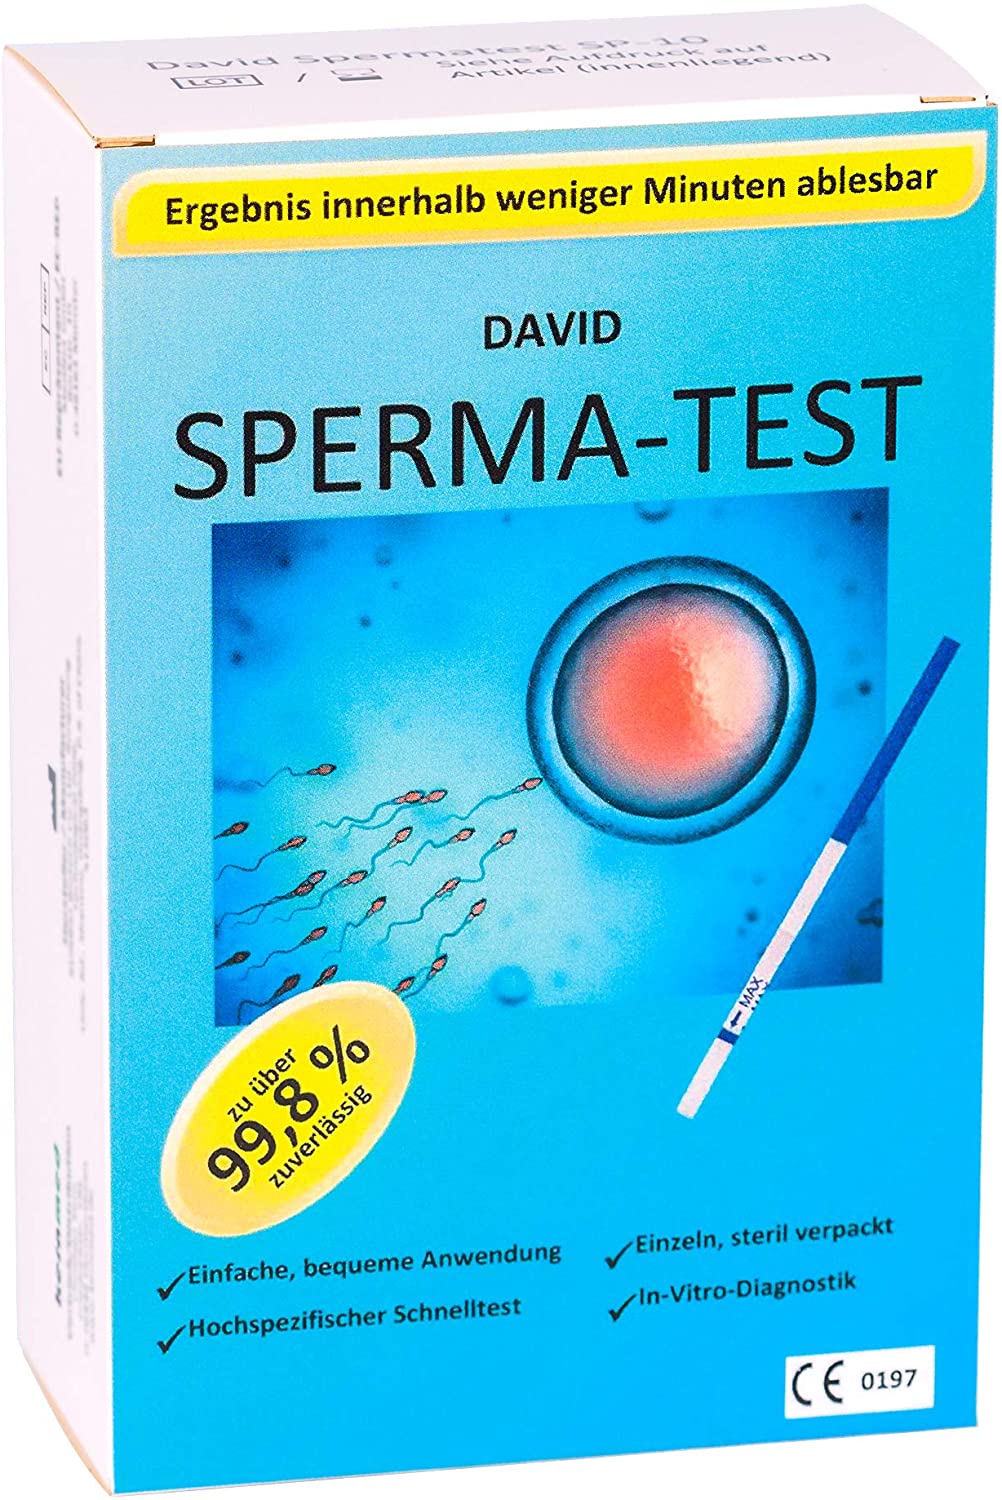 Fruchtbarkeitstest Sperma Test für Männer: Easy@Home 1 x Spermientest |  Zeugungsfähigkeit Schnelltest Kinderwunsch - Misst die Konzentration von